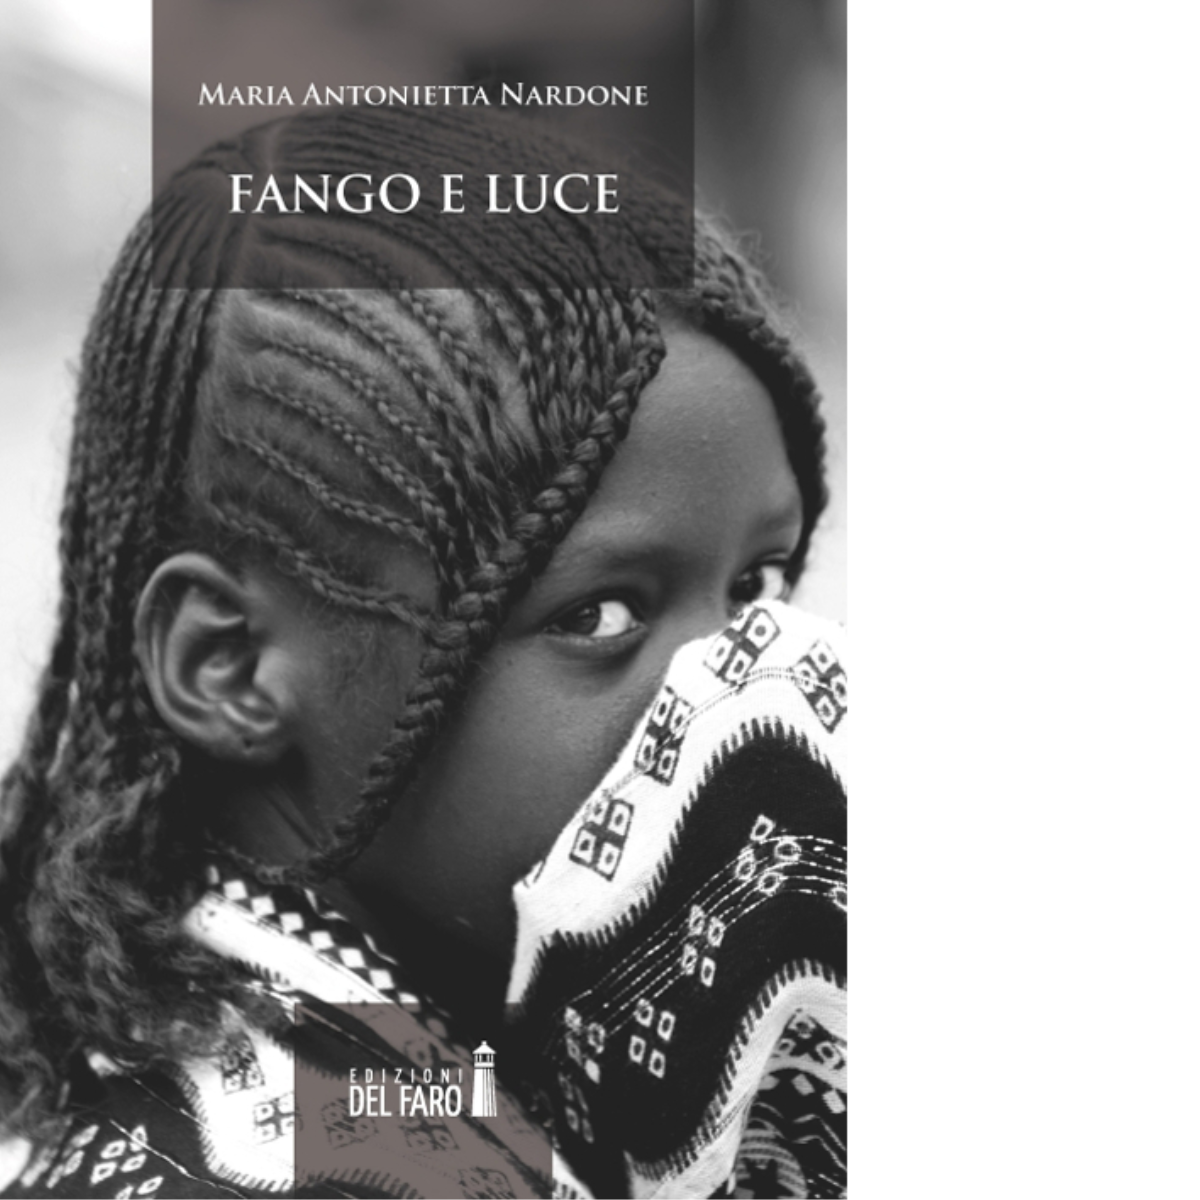 Fango e luce di Nardone M. Antonietta - Edizioni Del faro, 2014